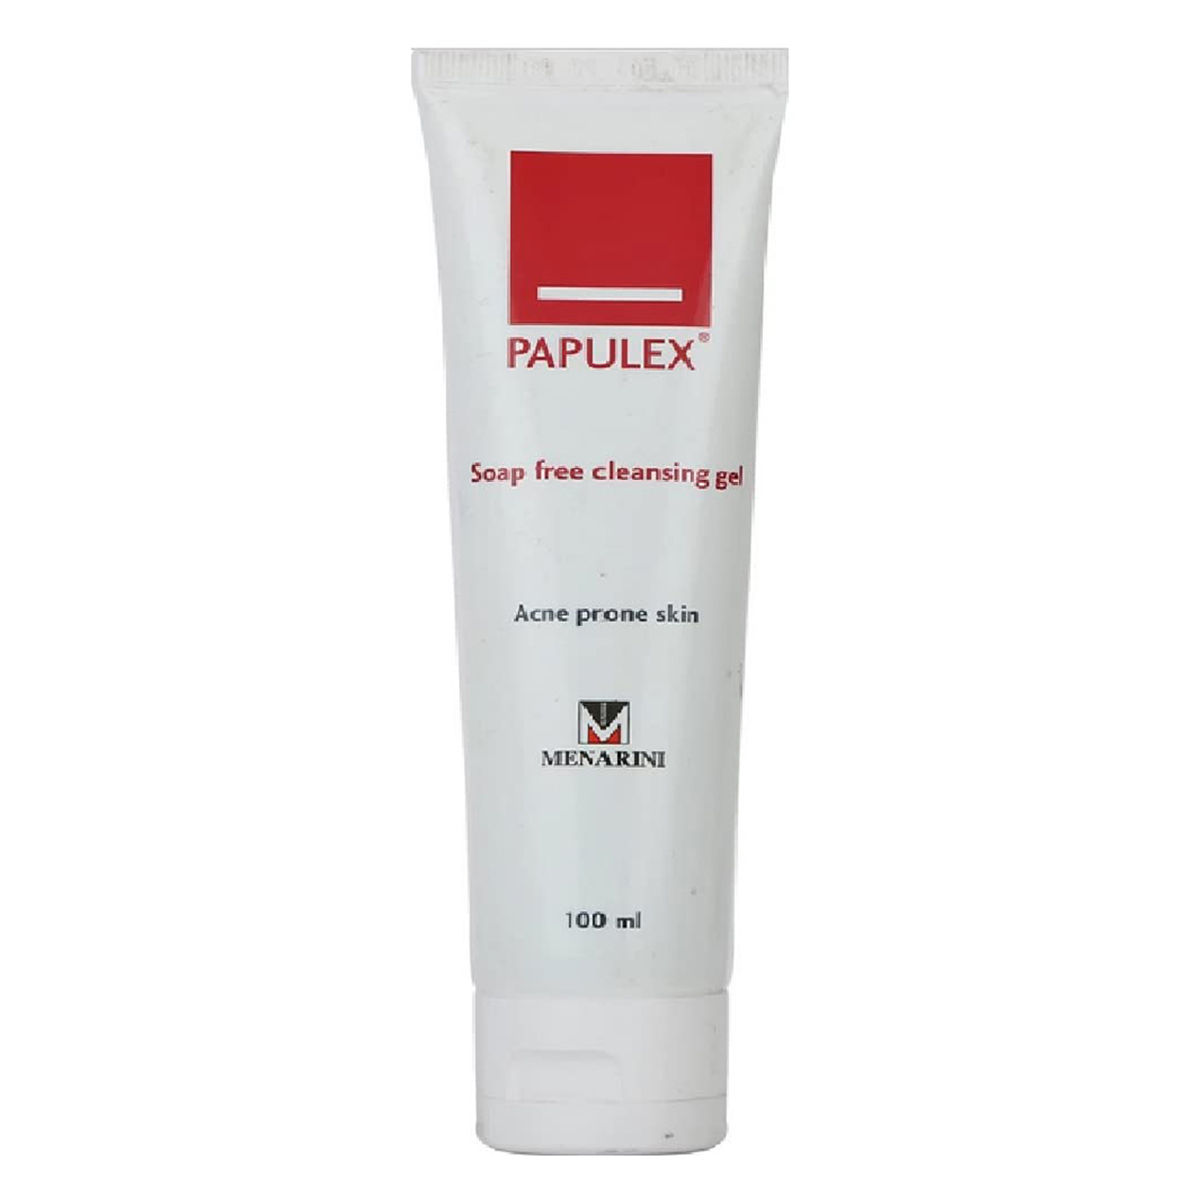 Buy Papulex Soap Free Cleansing Gel, 100 ml Online